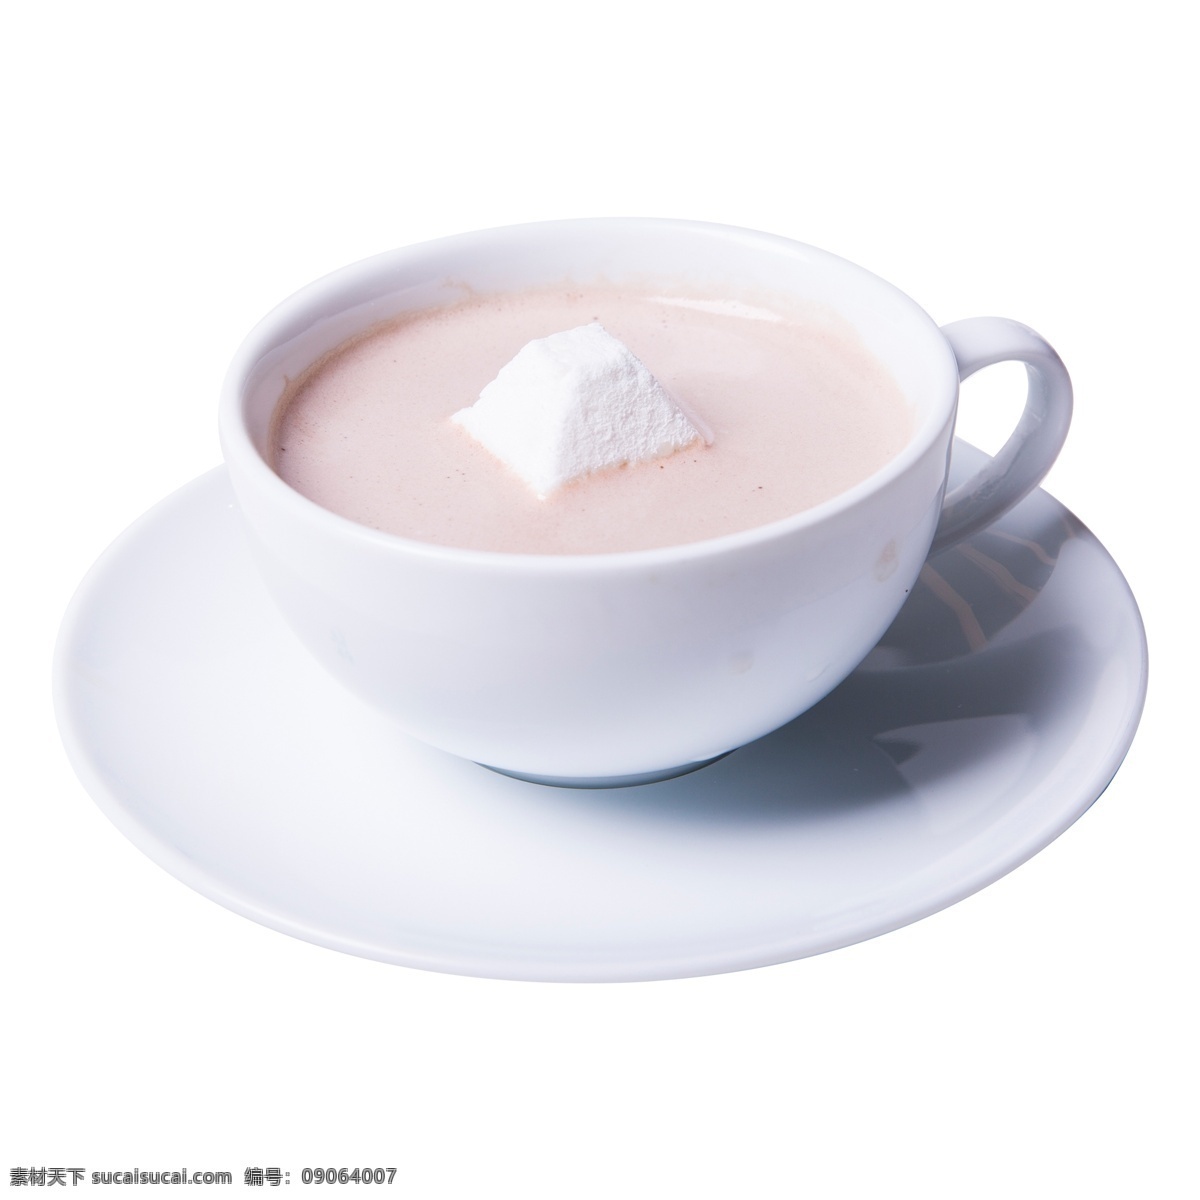 加 糖 咖啡杯 实拍 实物 图 加糖 咖啡 奶茶 加糖咖啡 加糖奶茶 未满咖啡 奶茶杯 白色咖啡杯 白色奶茶杯 实拍实物图